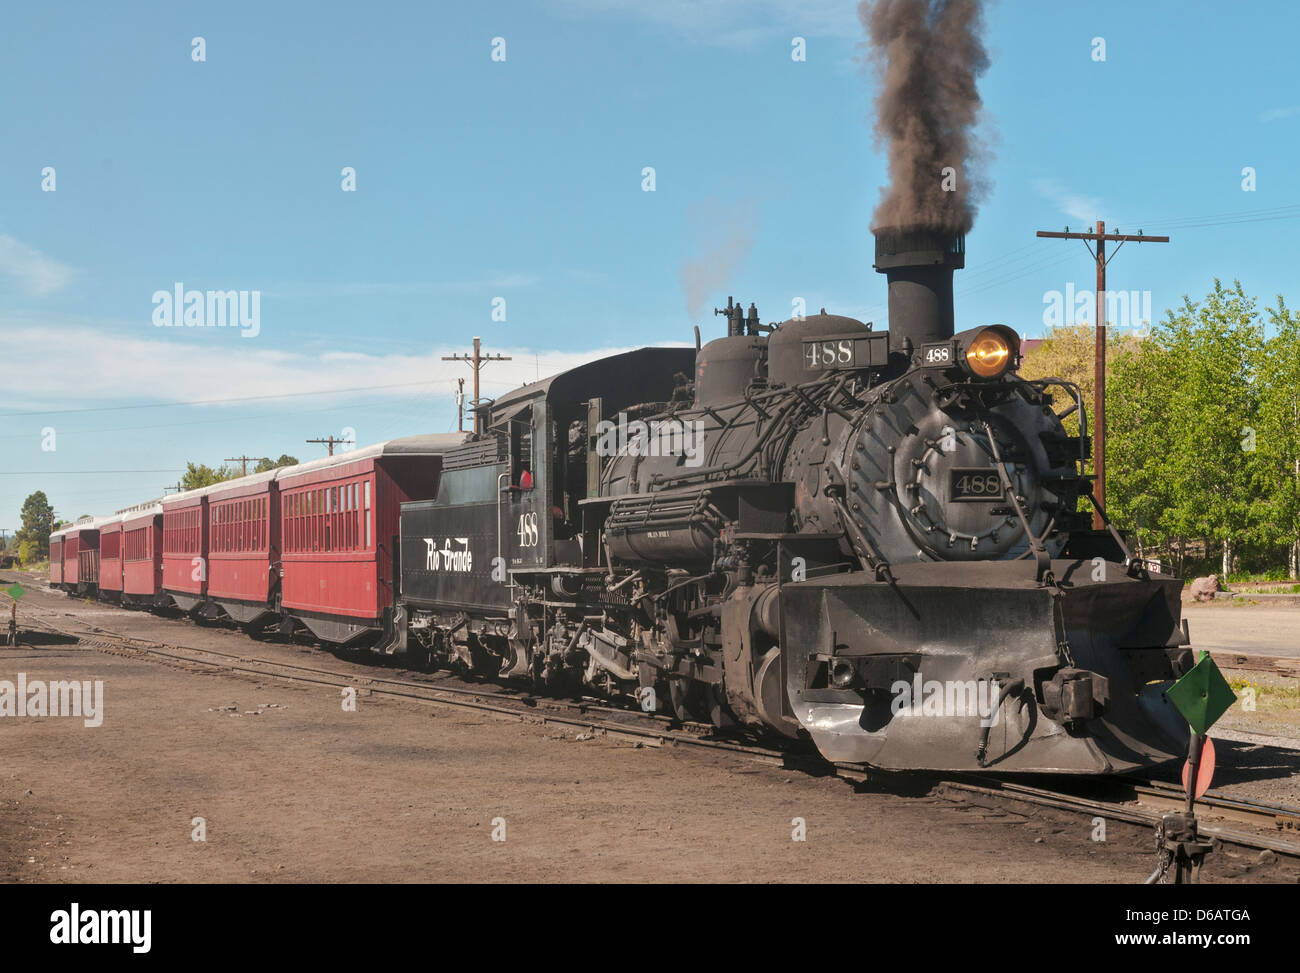 Nuovo Messico, Chama, Cumbres & Toltec Scenic Railroad, locomotiva a vapore Foto Stock